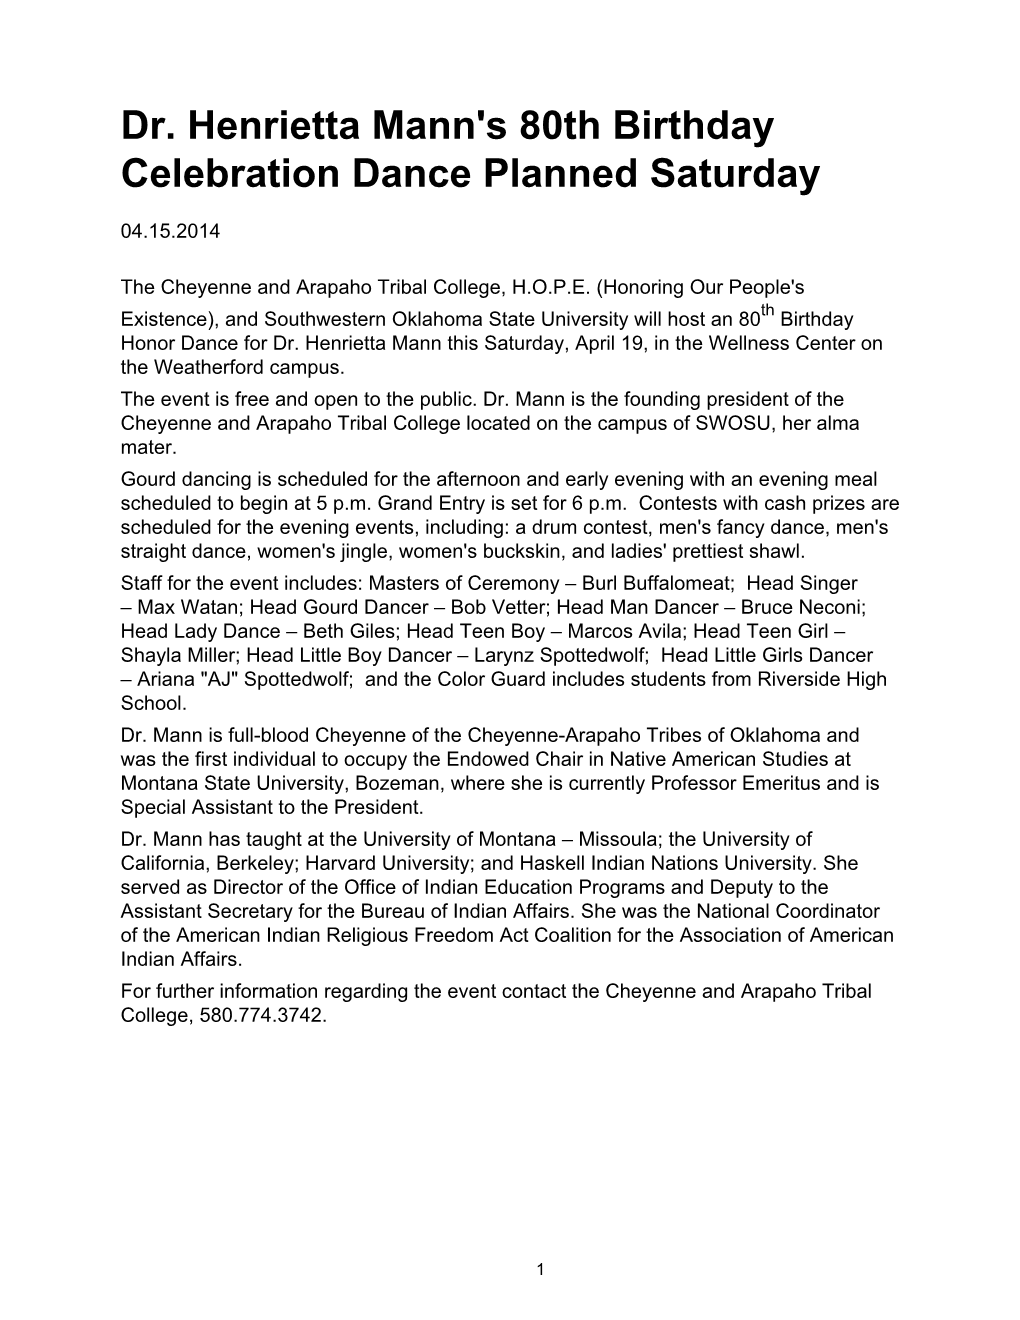 04-15-2014 Dr. Henrietta Mann's 80Th Birthday Celebration Dance Planned Saturday